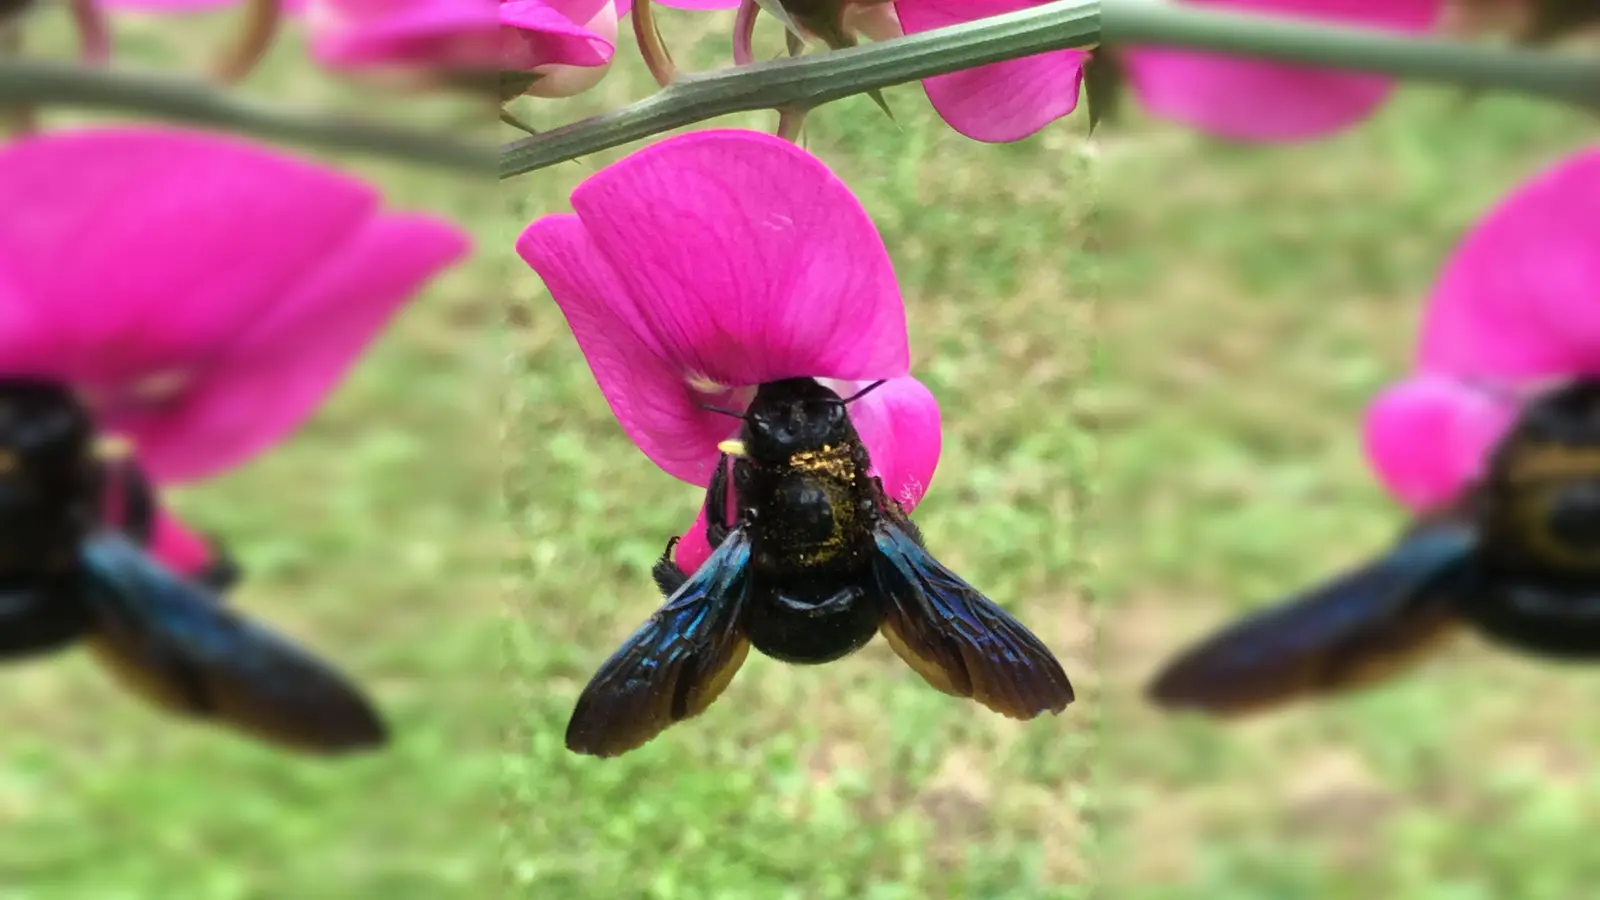 Summ, summ! Die Blauschimmernde Holzbiene fühlt sich am wohlsten, wenn sie sich an großen und nektarreichen Blüten sattessen kann. (Foto: Claudia Wittke-Gaida/dpa-tmn)